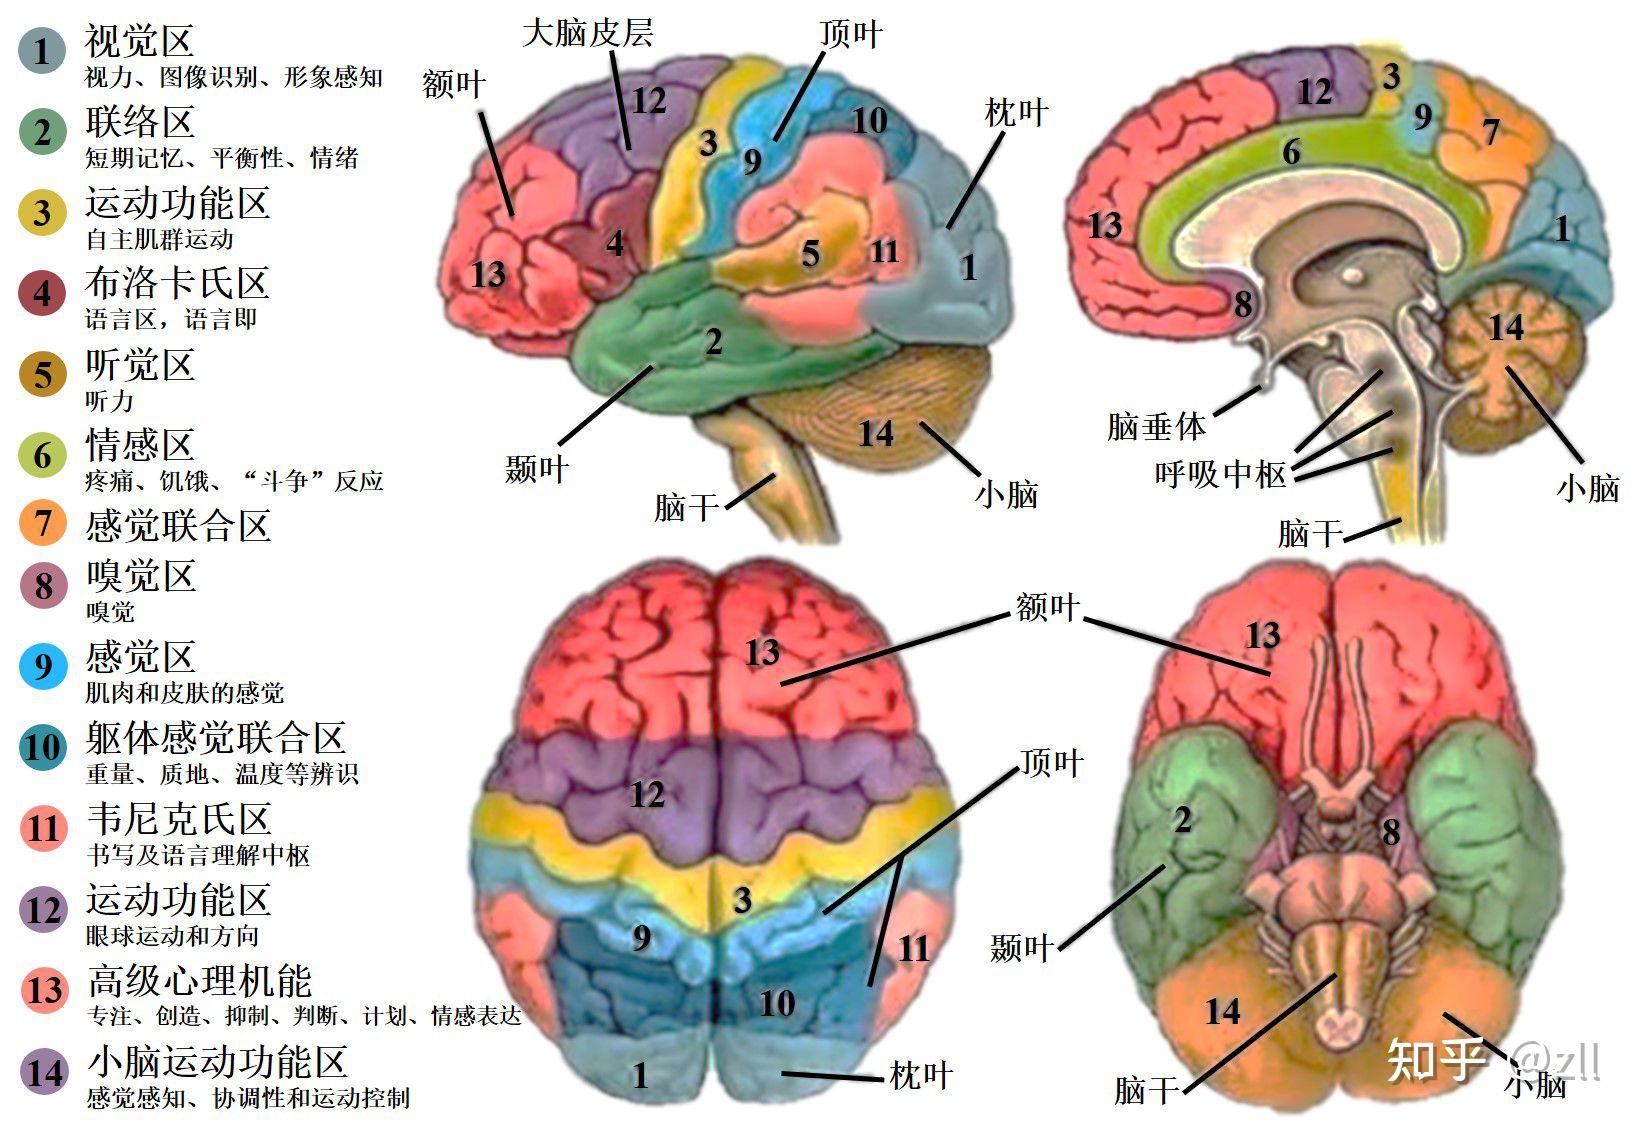 图5-3-7 视觉神经冲动传导通路-人体解剖学与组织生理病理学-医学